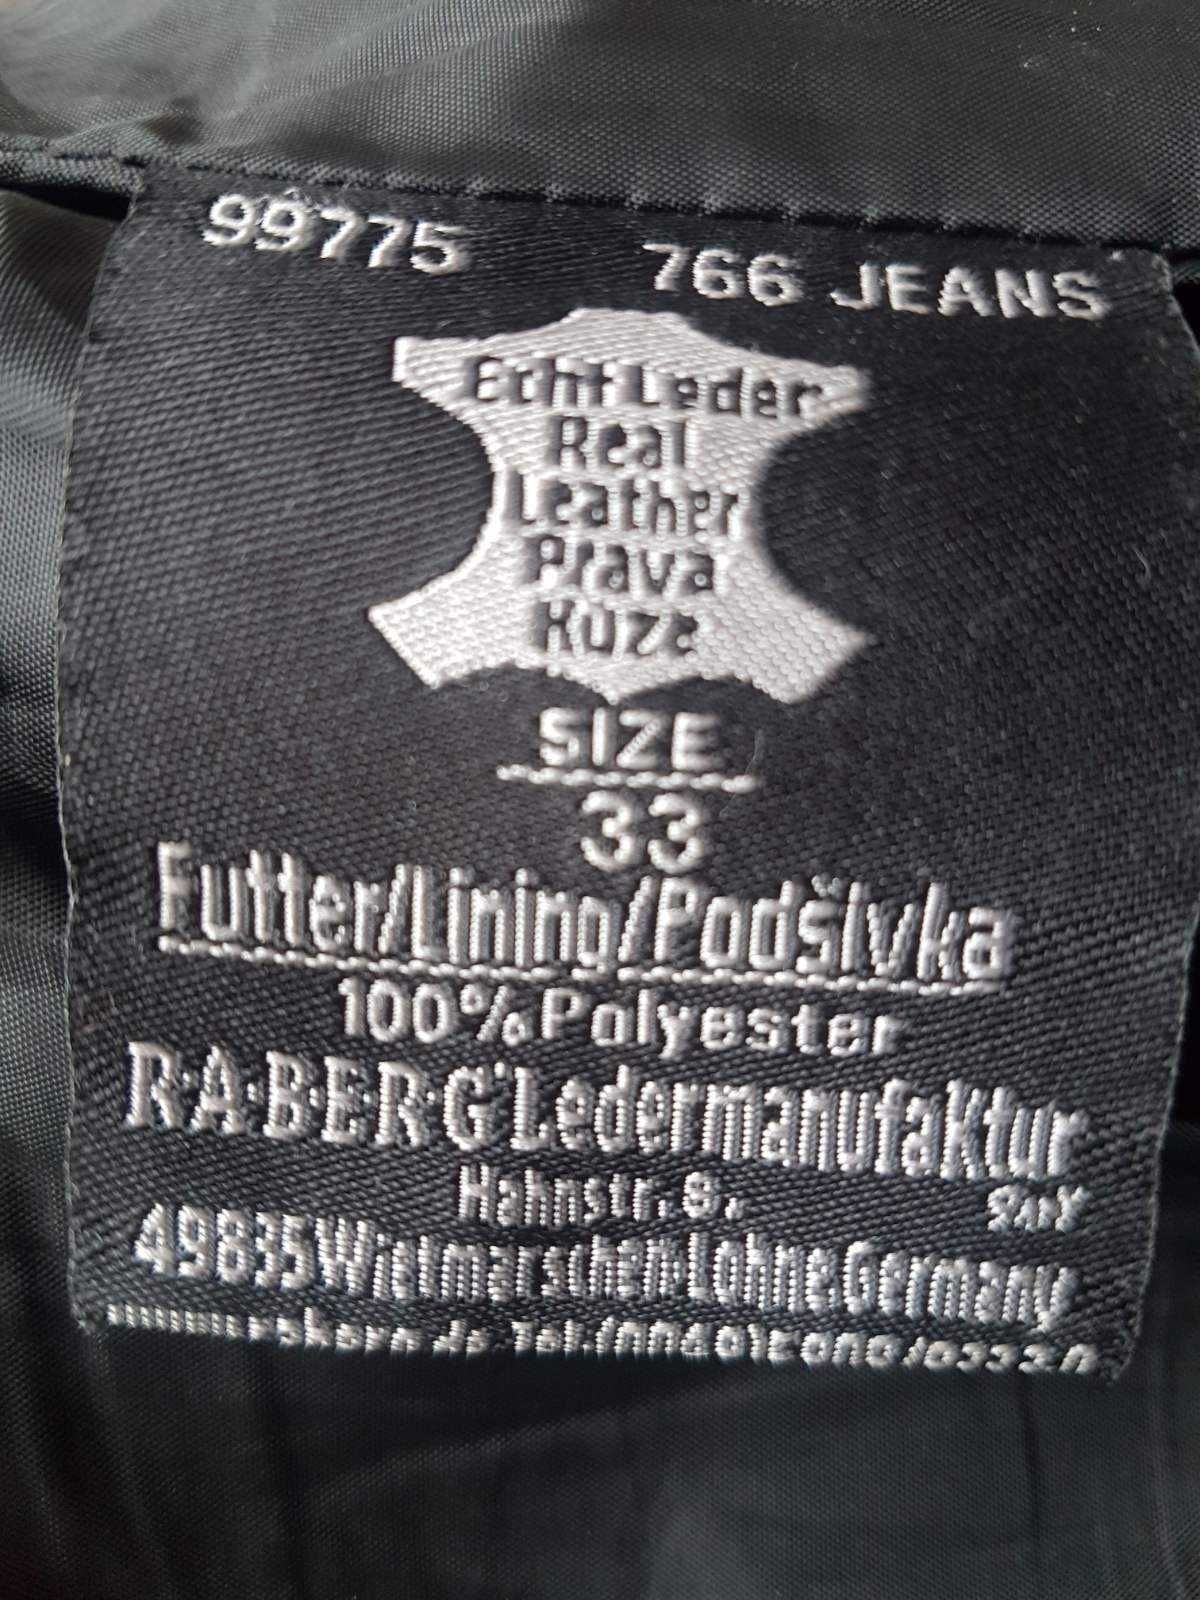 Кожаные байкерские брюки со шнуровкой. RABERG, состояние идеал.